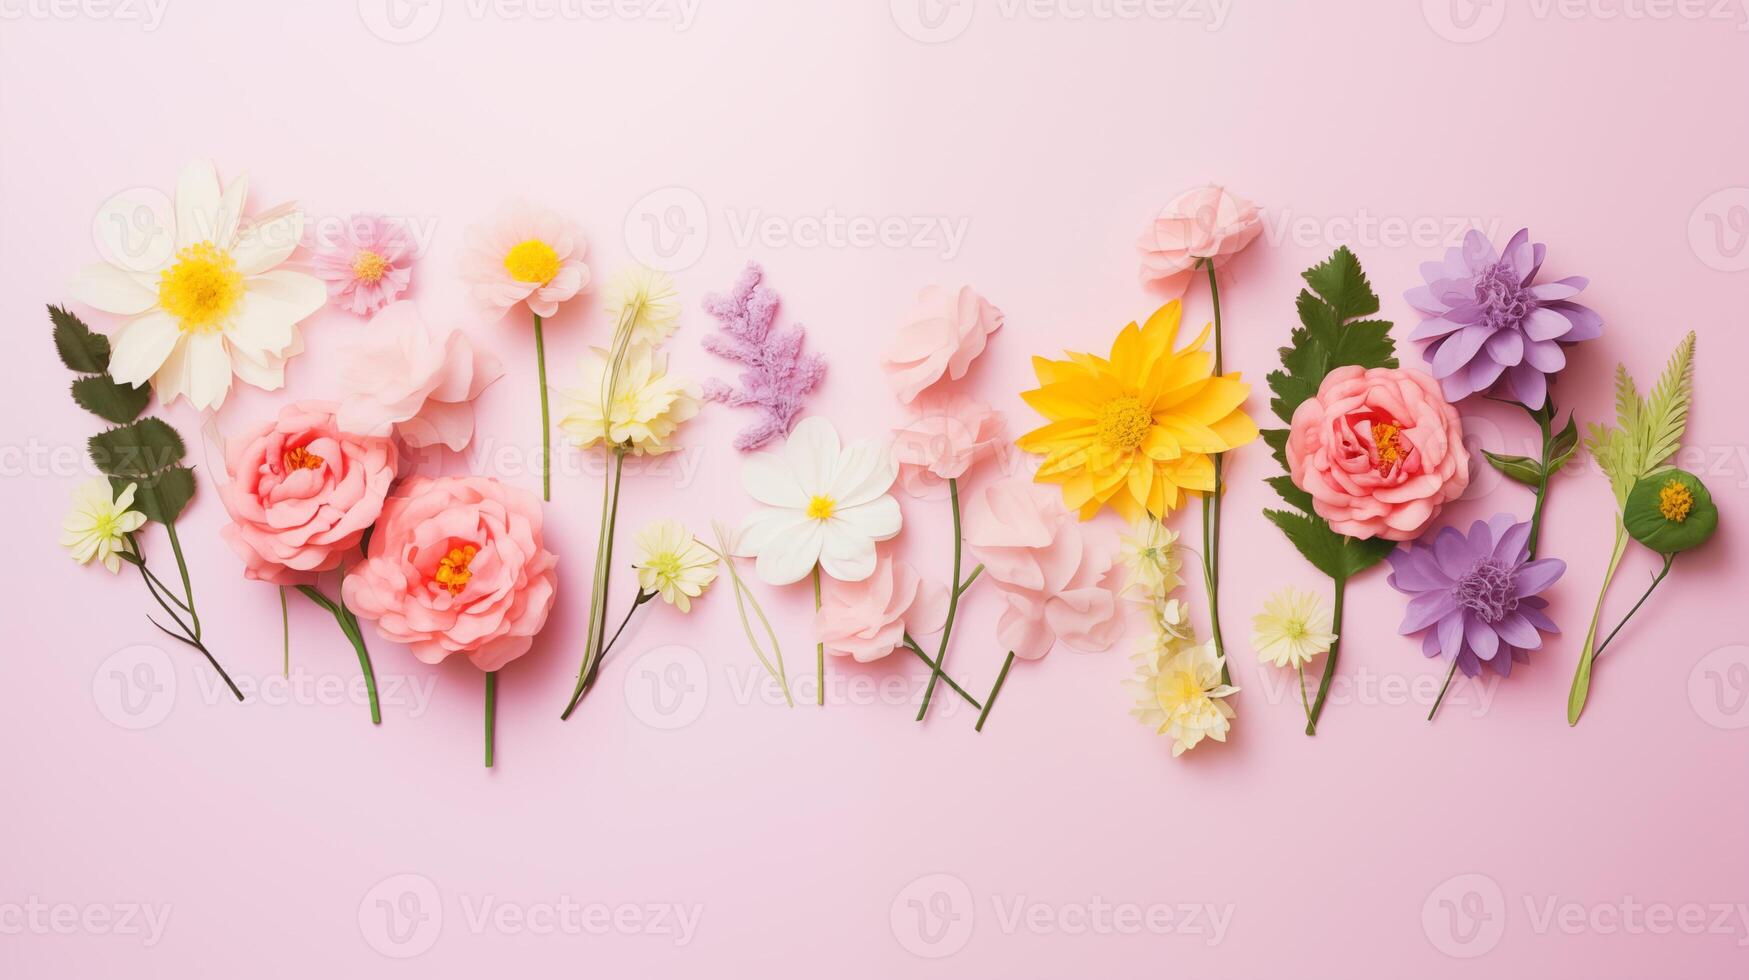 ai gerado sortimento do Primavera flores em pálido Rosa fundo foto